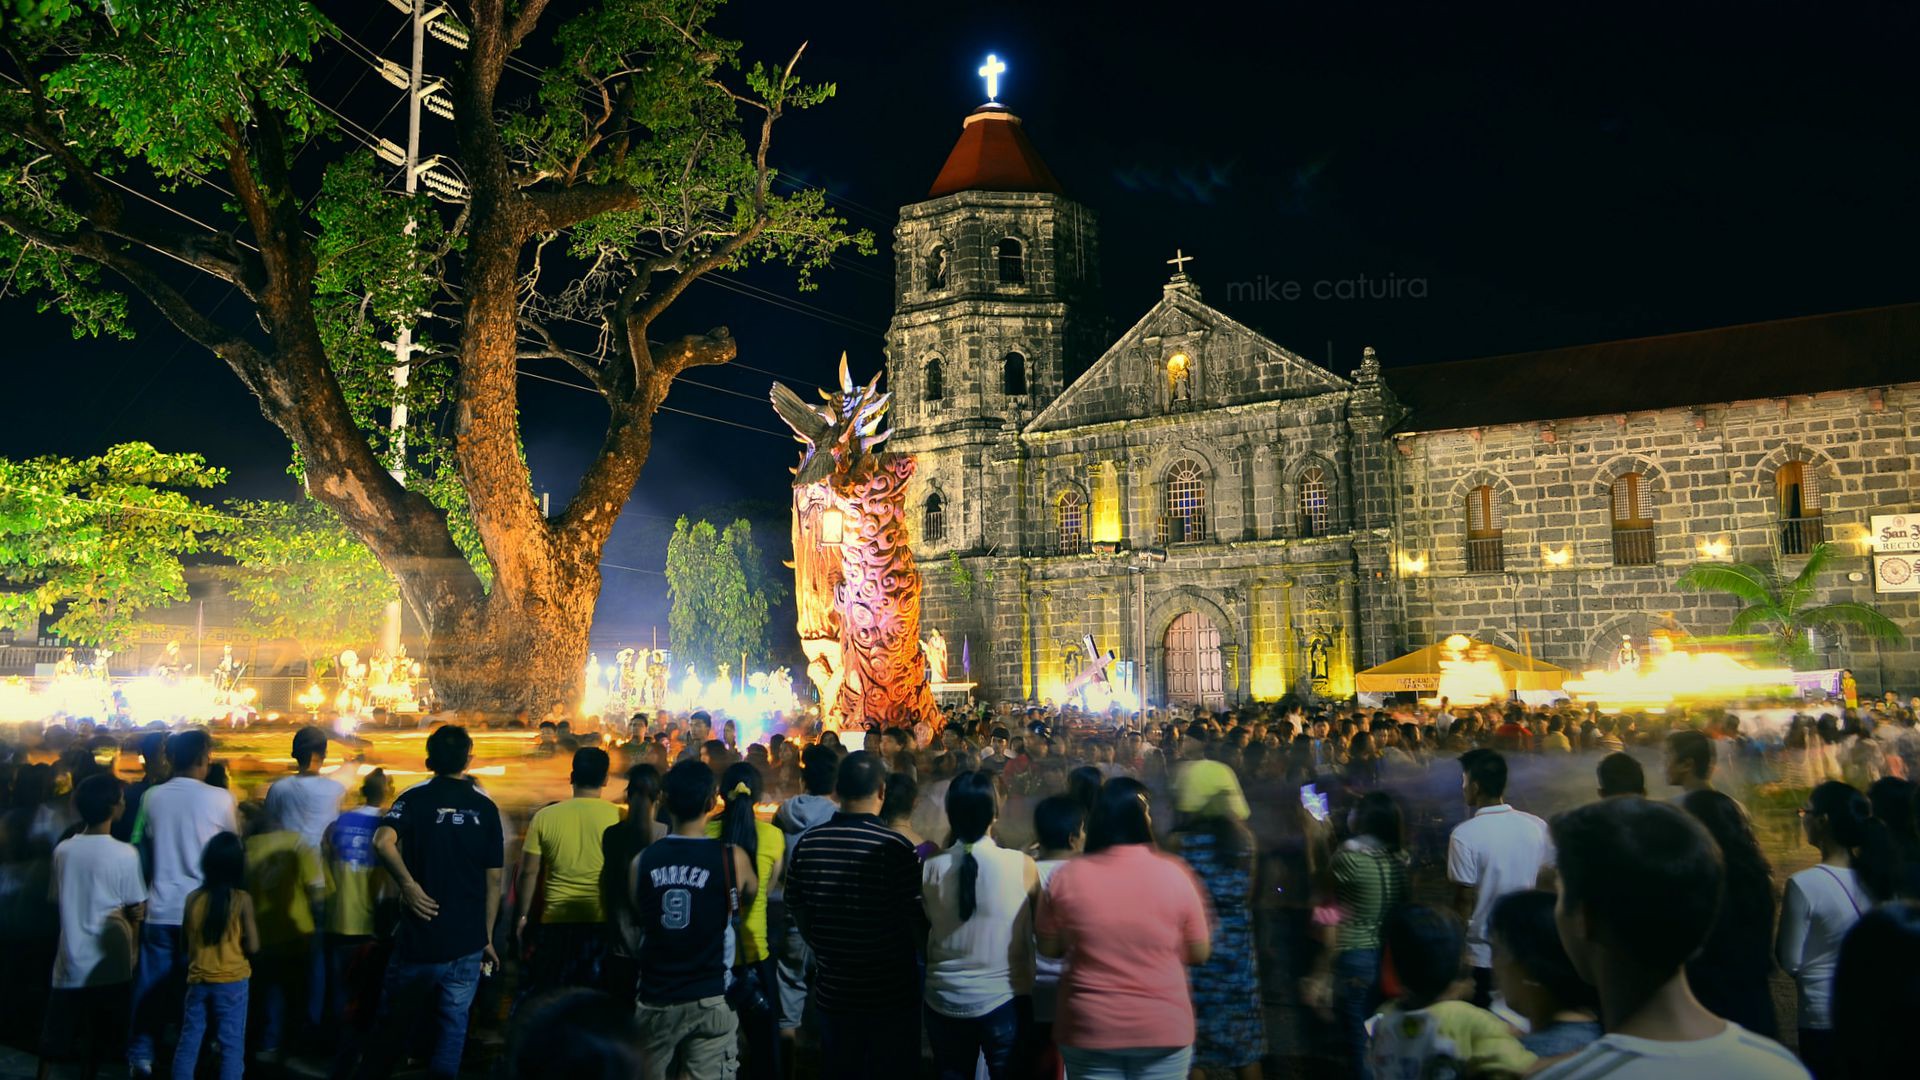 Les catholiques philippins se mobilisent pour le climat (Photo:Mike Anthony Catuira/Flickr/CC BY 2.0)